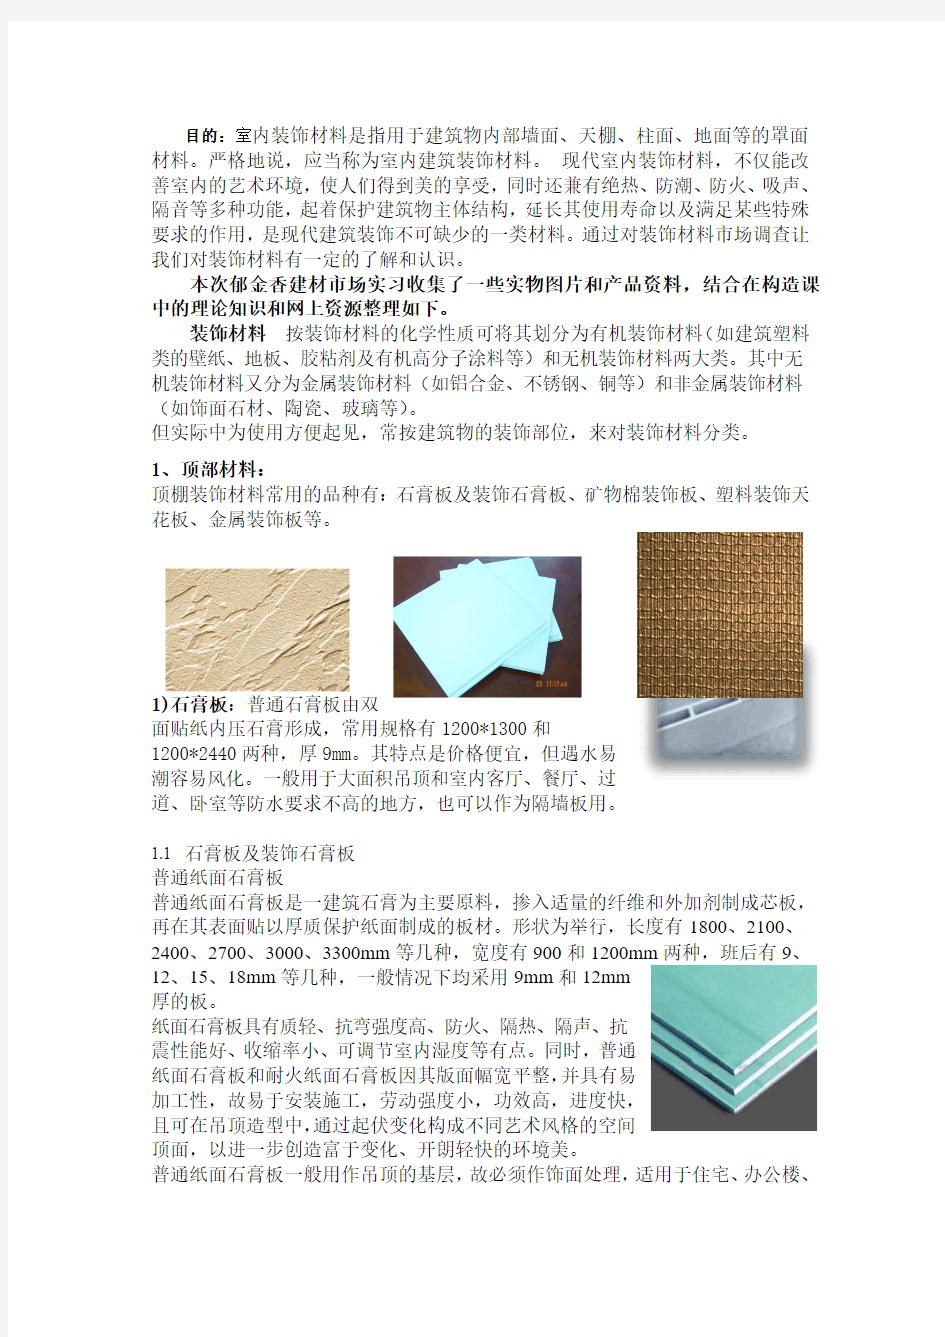 装饰材料市场调查报告 (2)